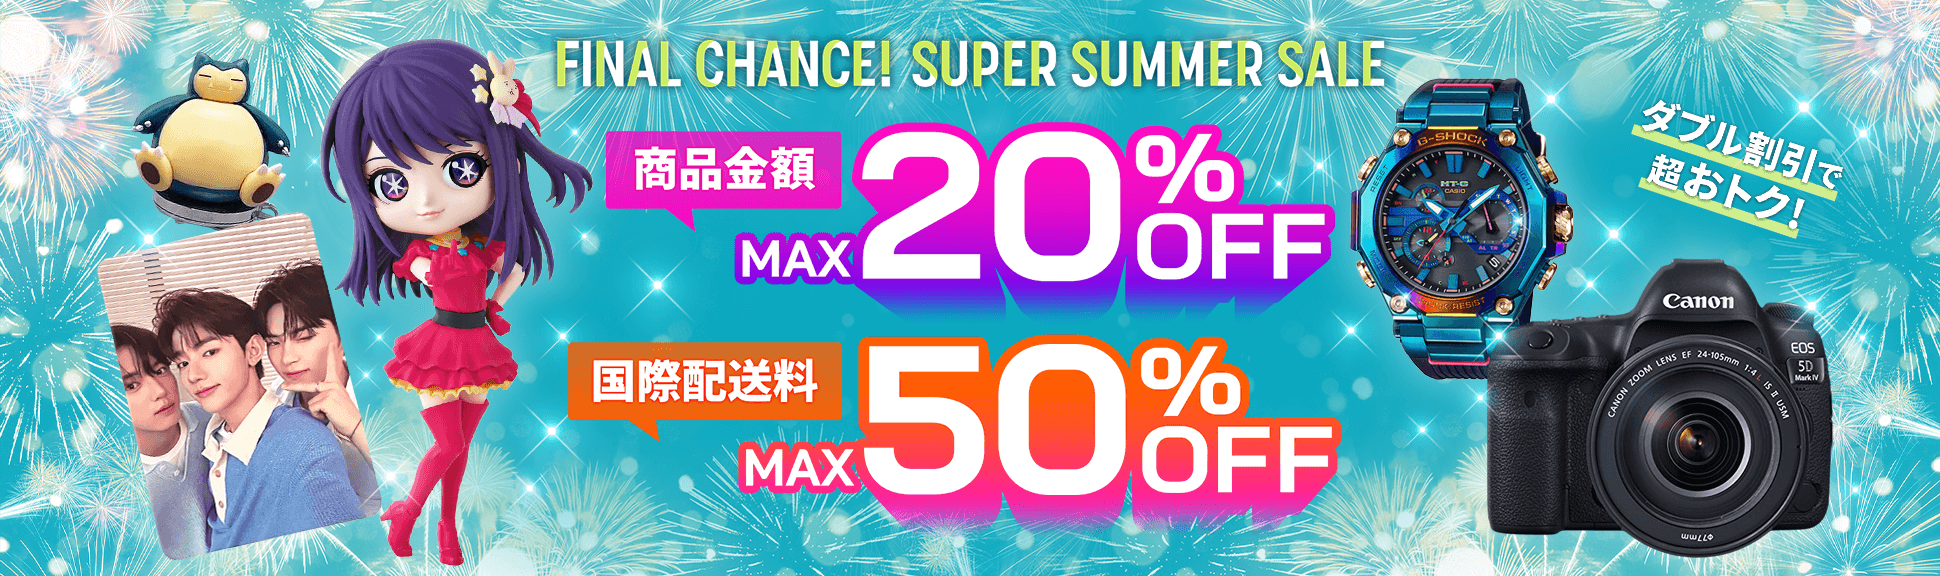 Final Chance! Super Summer Sale